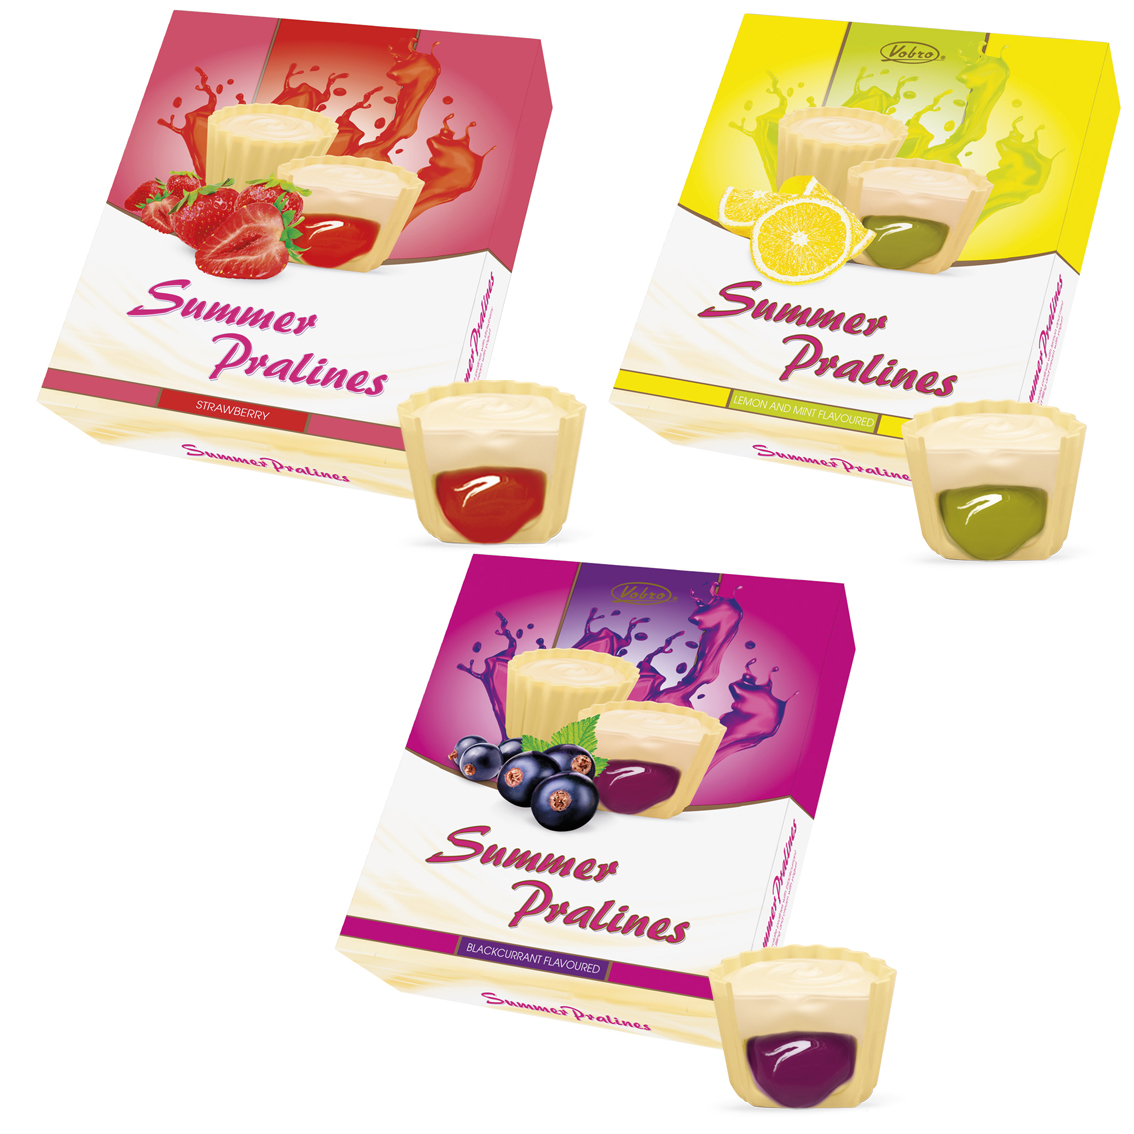 Summer Pralines – nowe praliny w białej czekoladzie